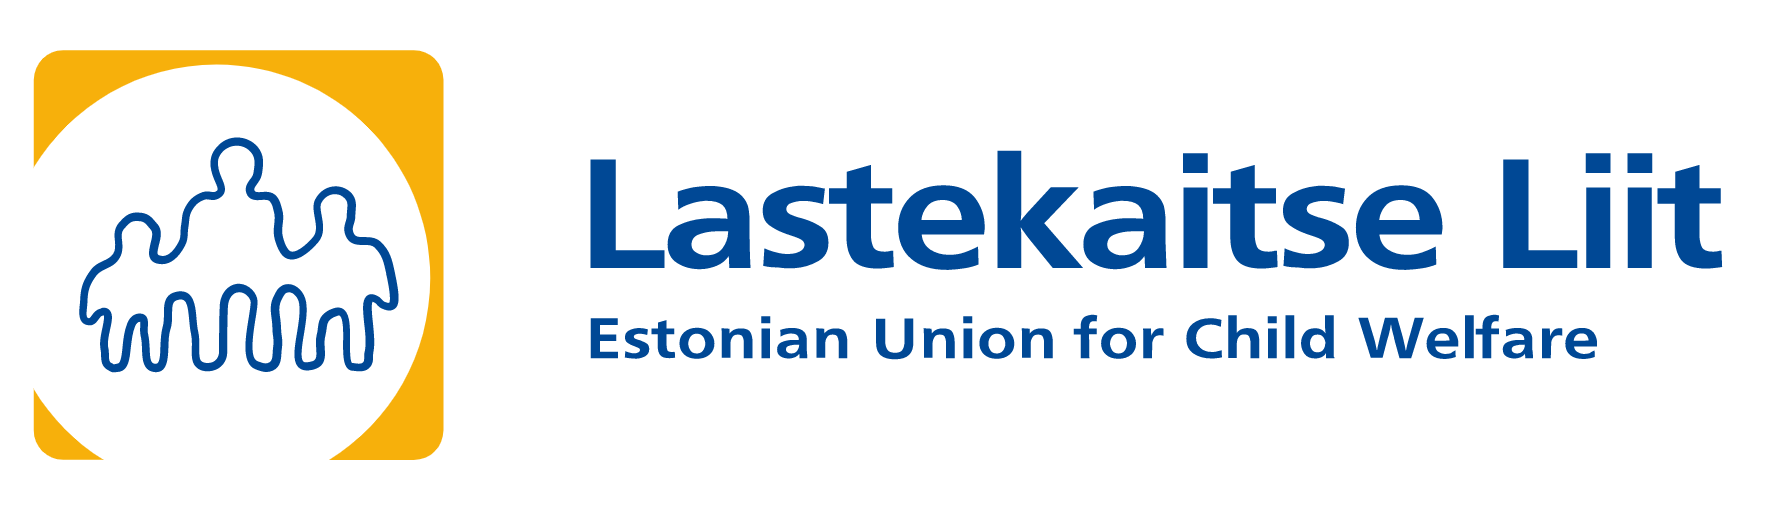 Estonian Union for Child Welfare